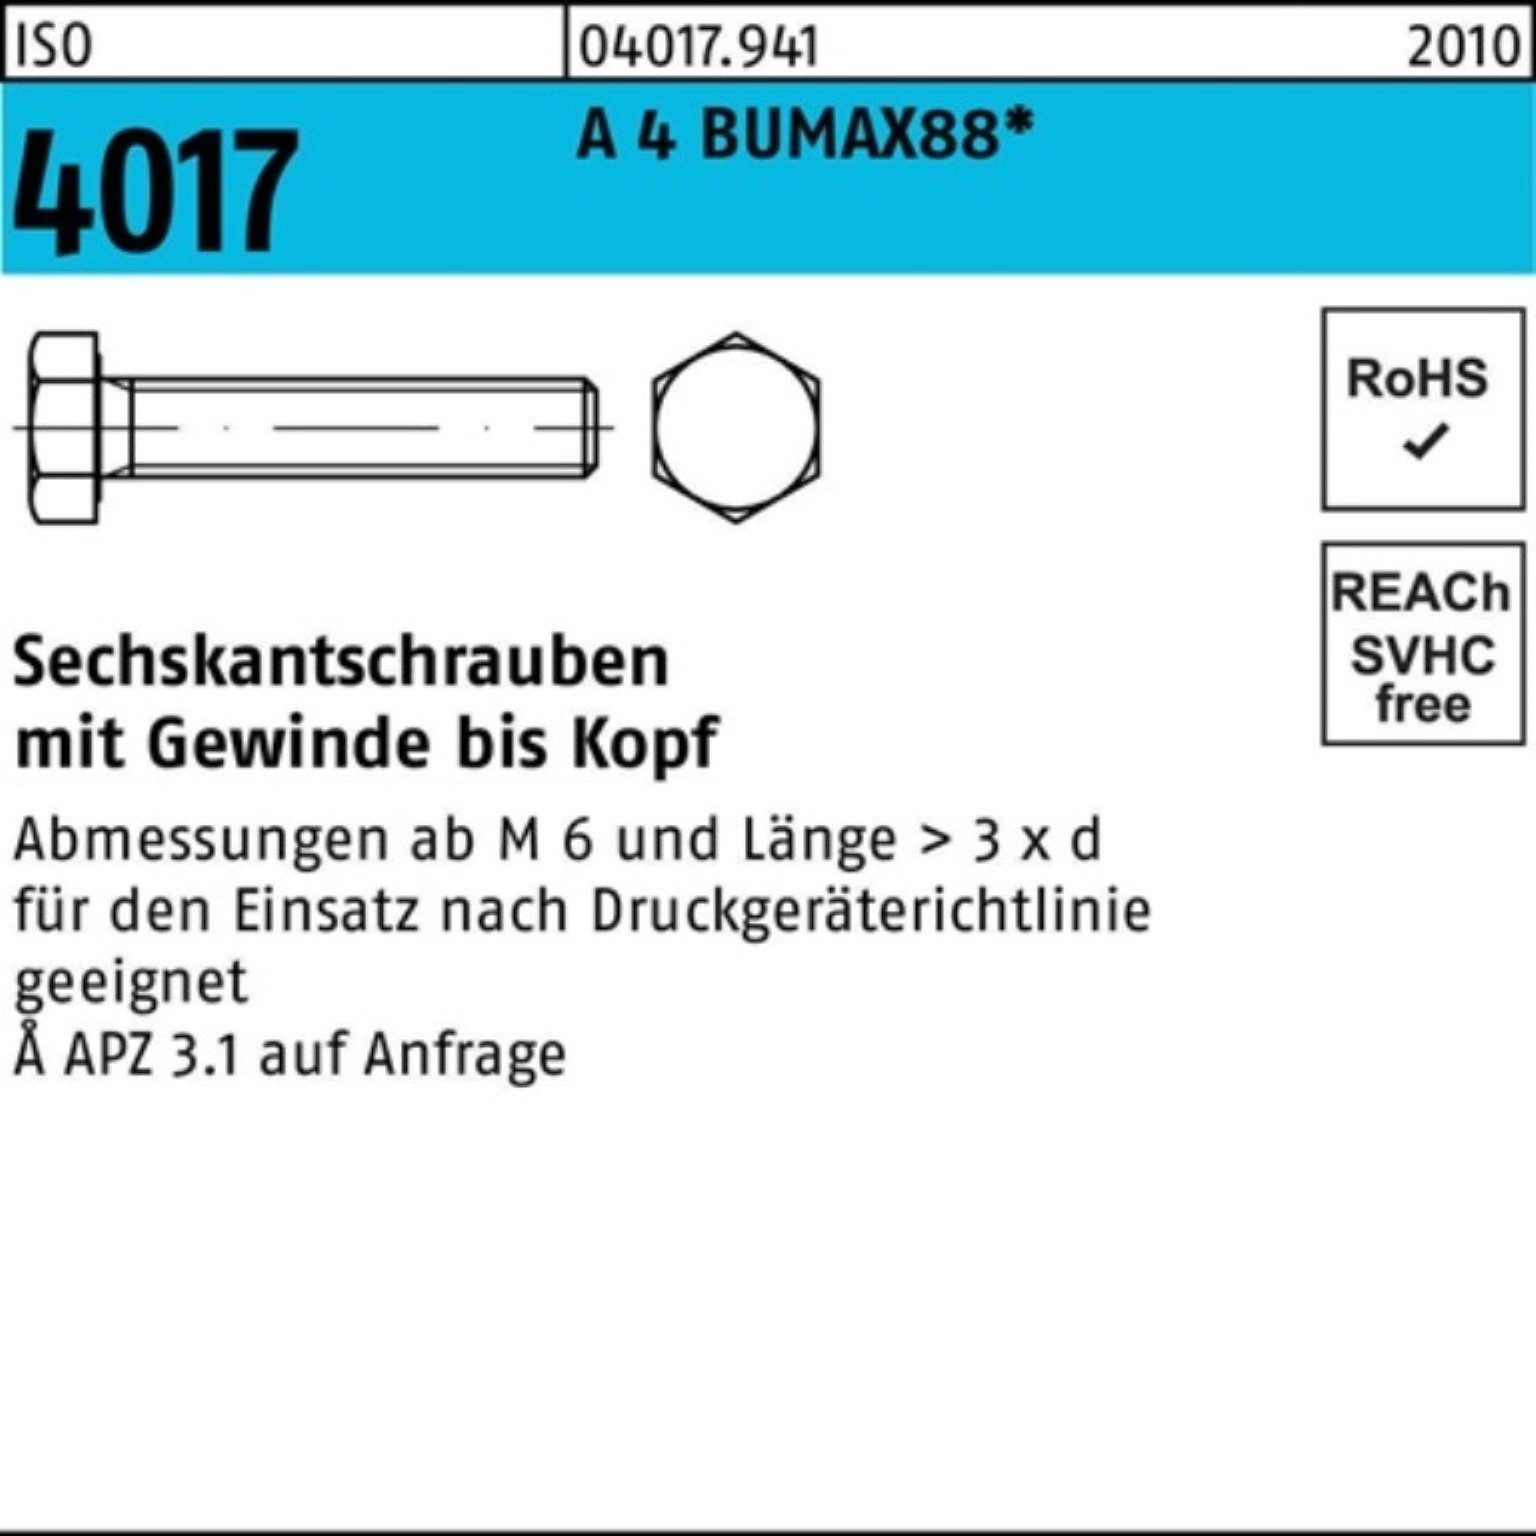 Bufab Sechskantschraube 30 4017 A Stück VG 50 Sechskantschraube M10x BUMAX88 100er 4 Pack ISO